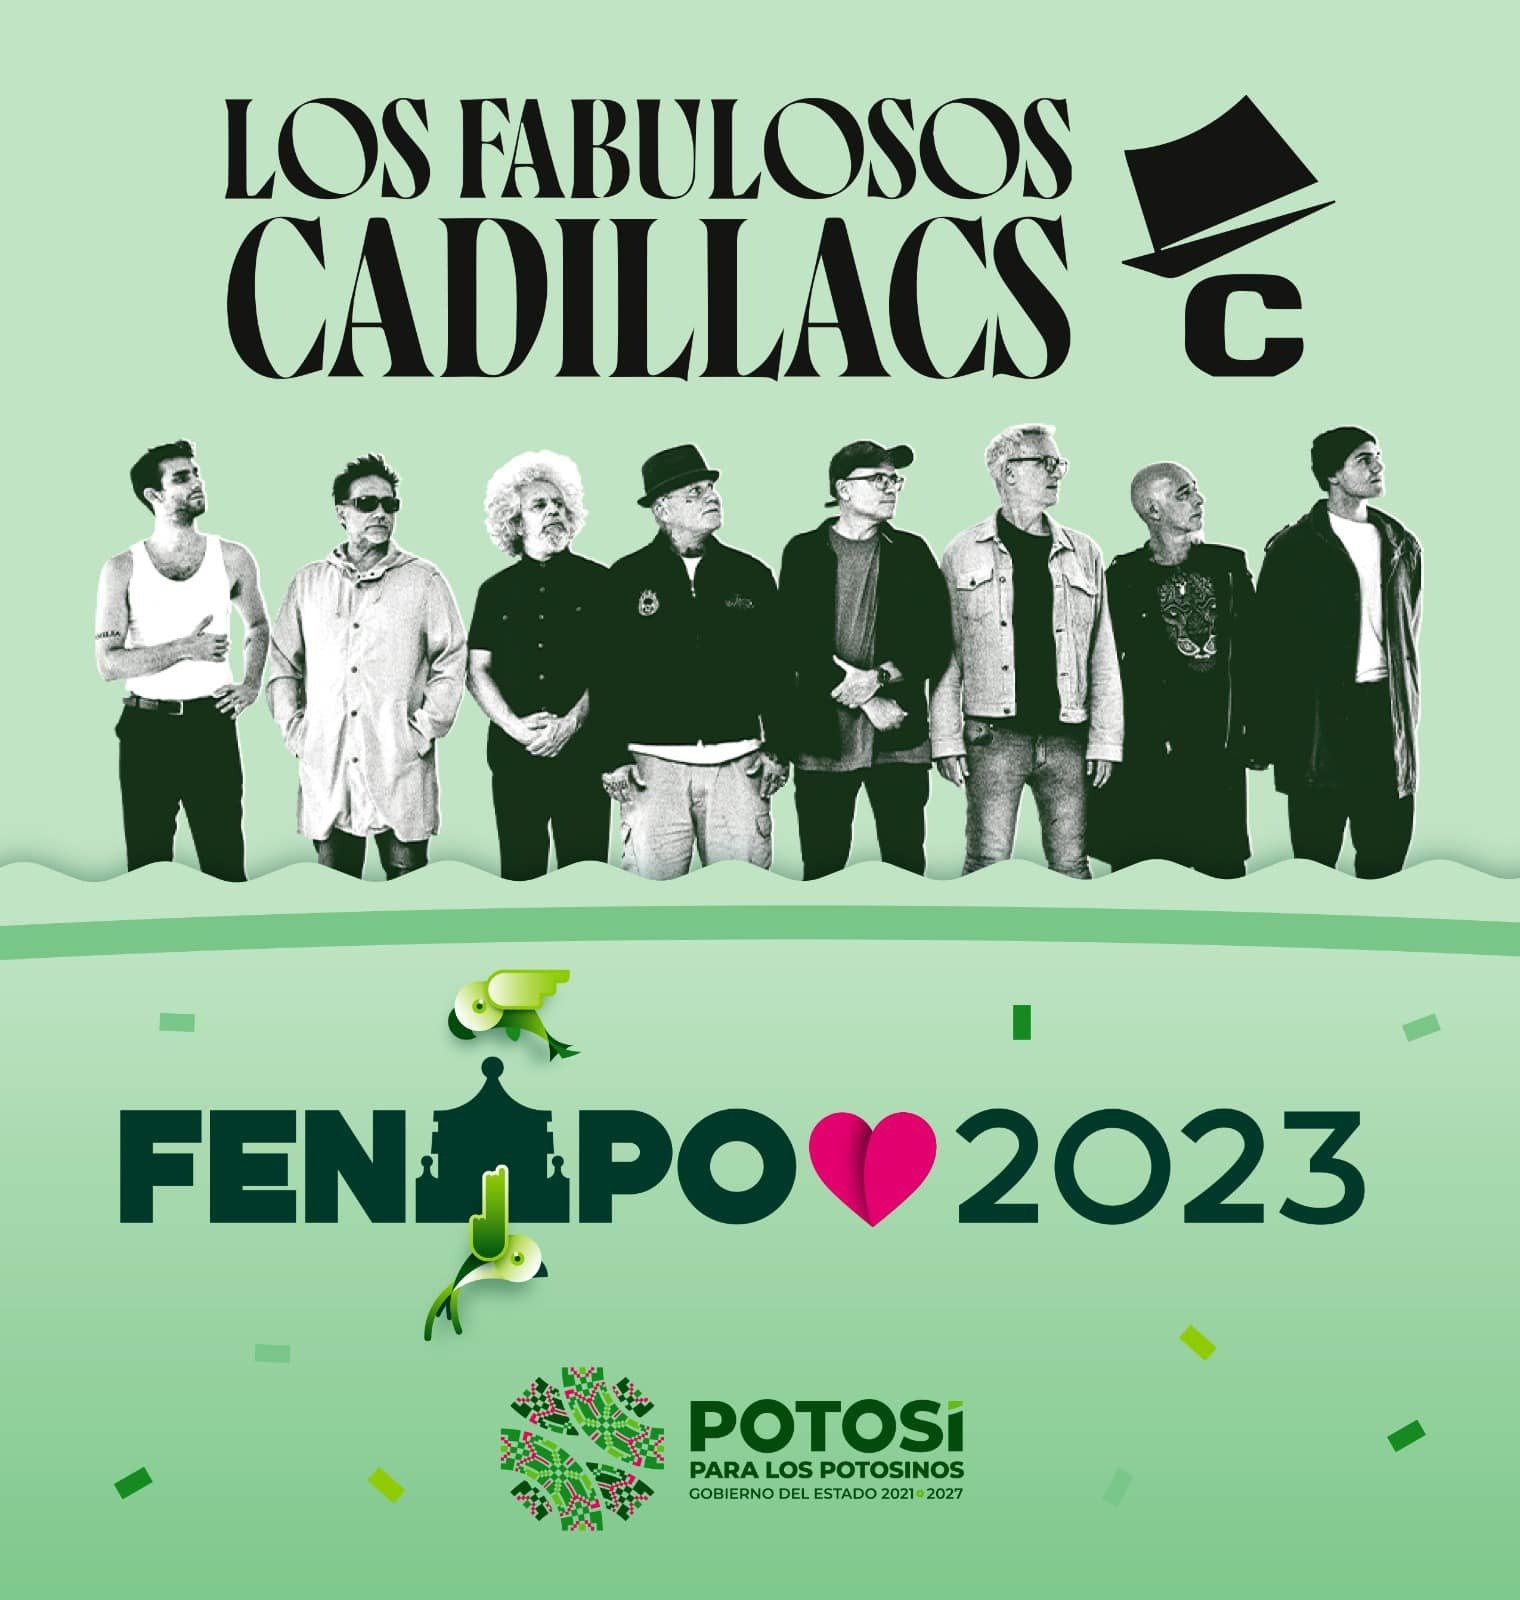 LLEGAN LOS FABULOSOS CADILLACS A FENAPO 2023